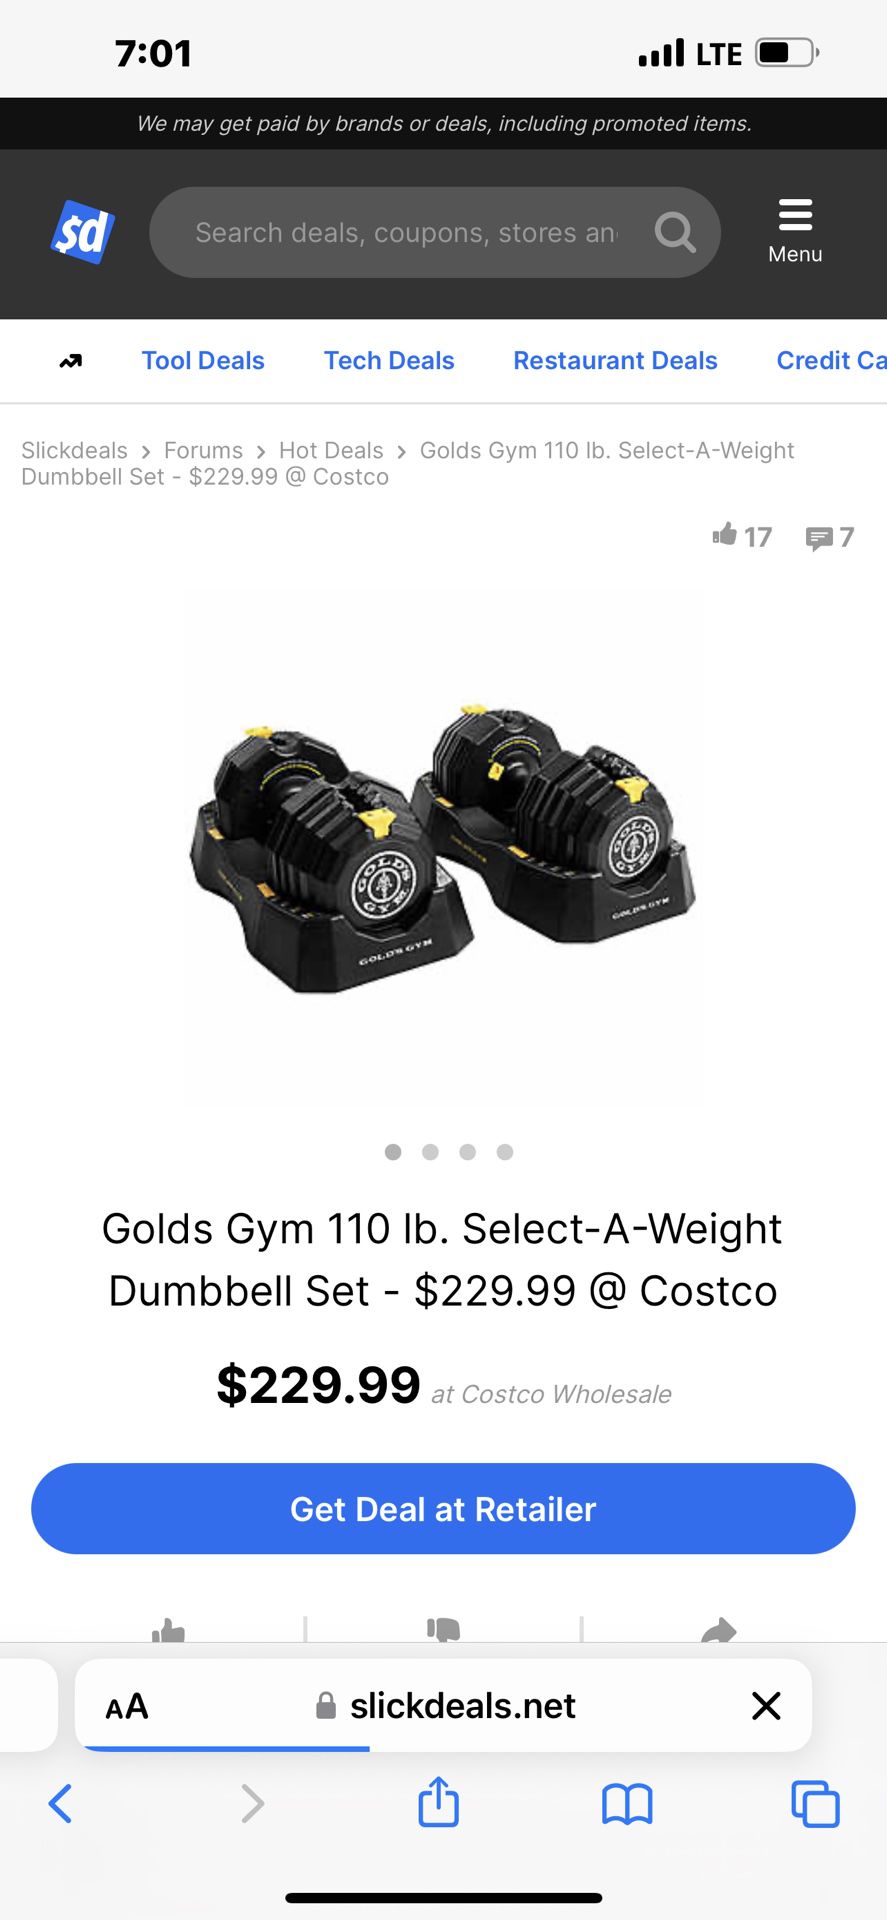 Golds Gym Adjustable, Dumbbells